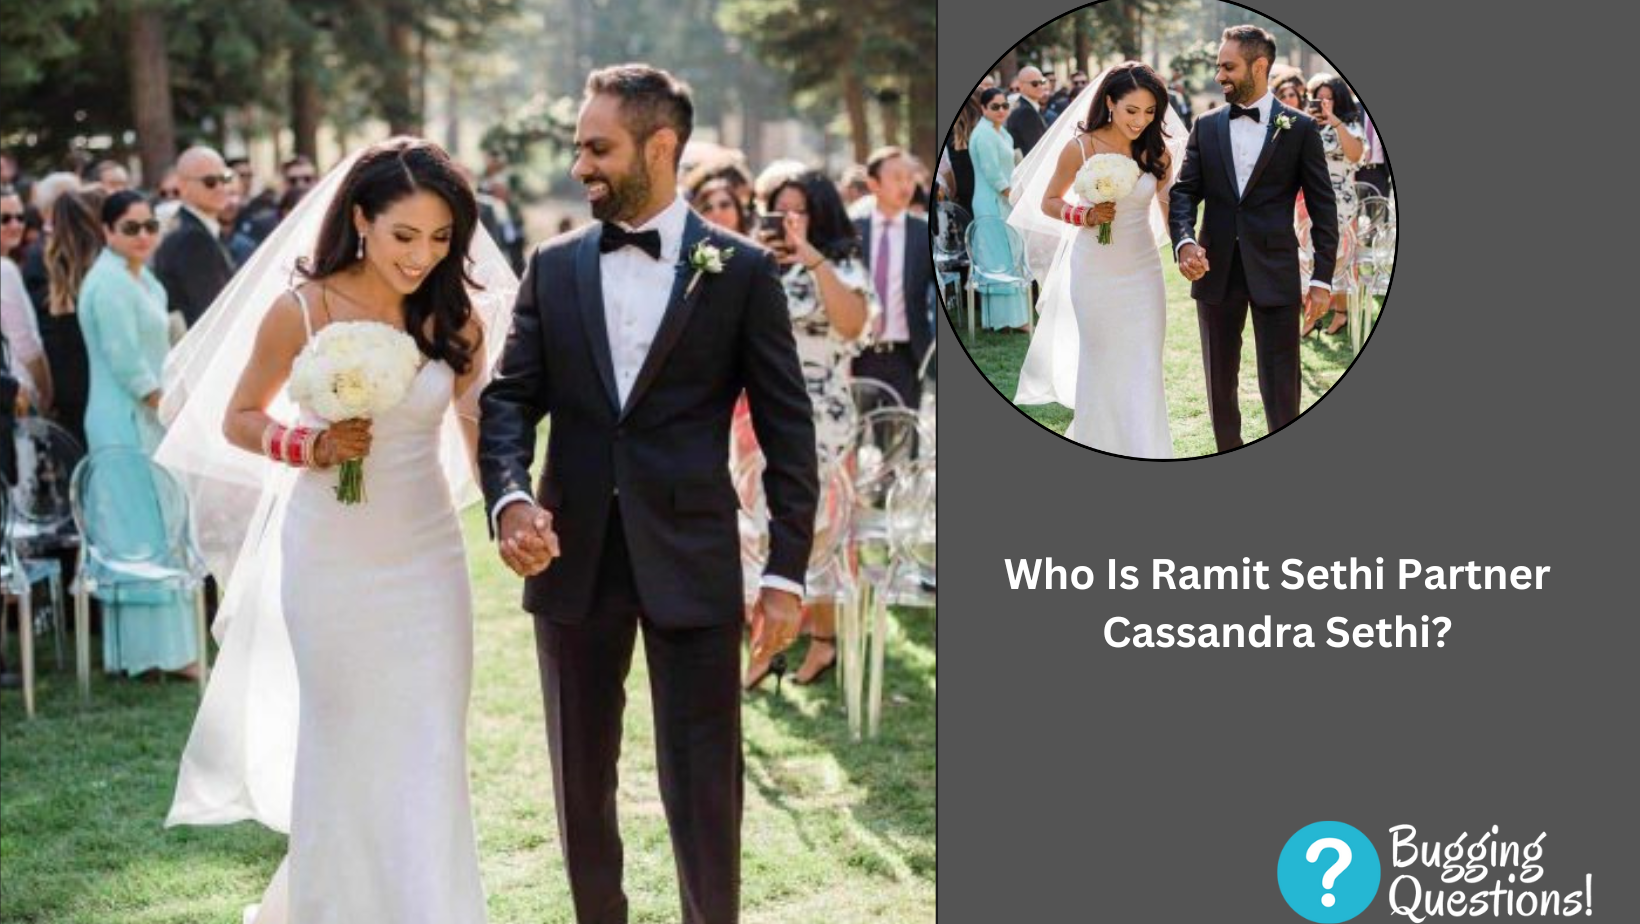 Who Is Ramit Sethi Partner Cassandra Sethi? Wedding Photos And Family